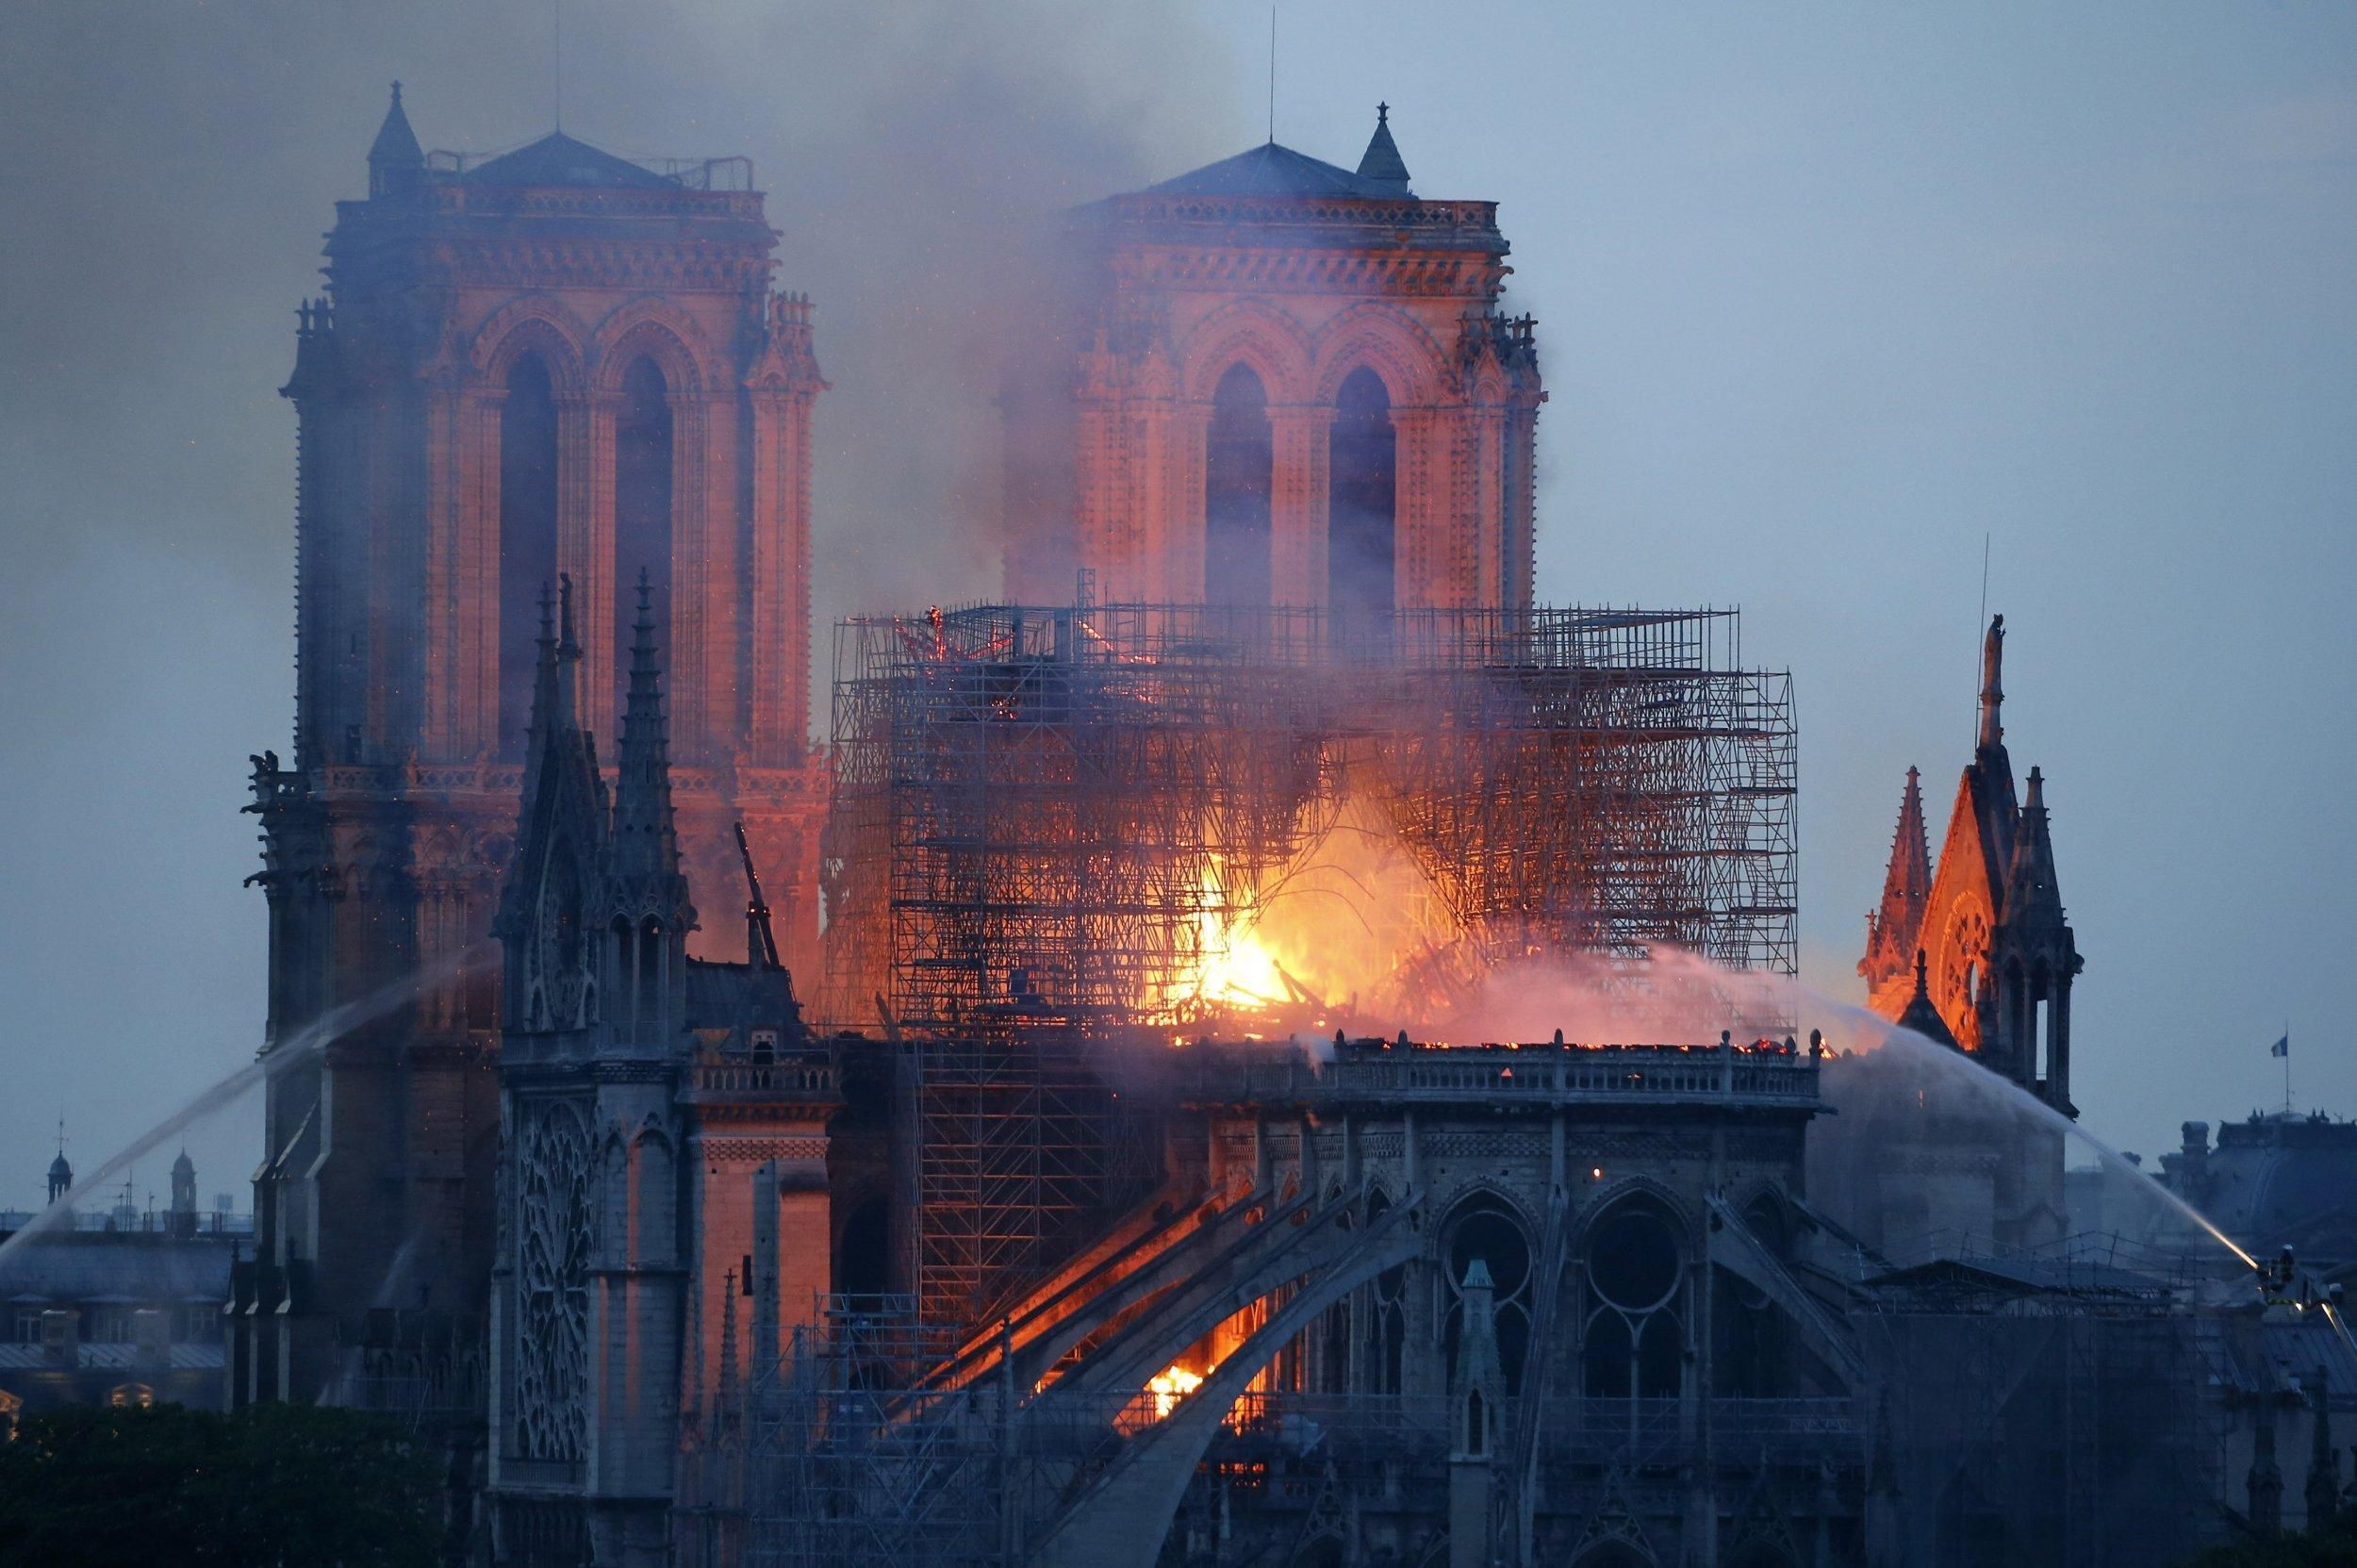 Який вигляд має інтер’єр Собору Паризької Богоматері після масштабної пожежі: фото